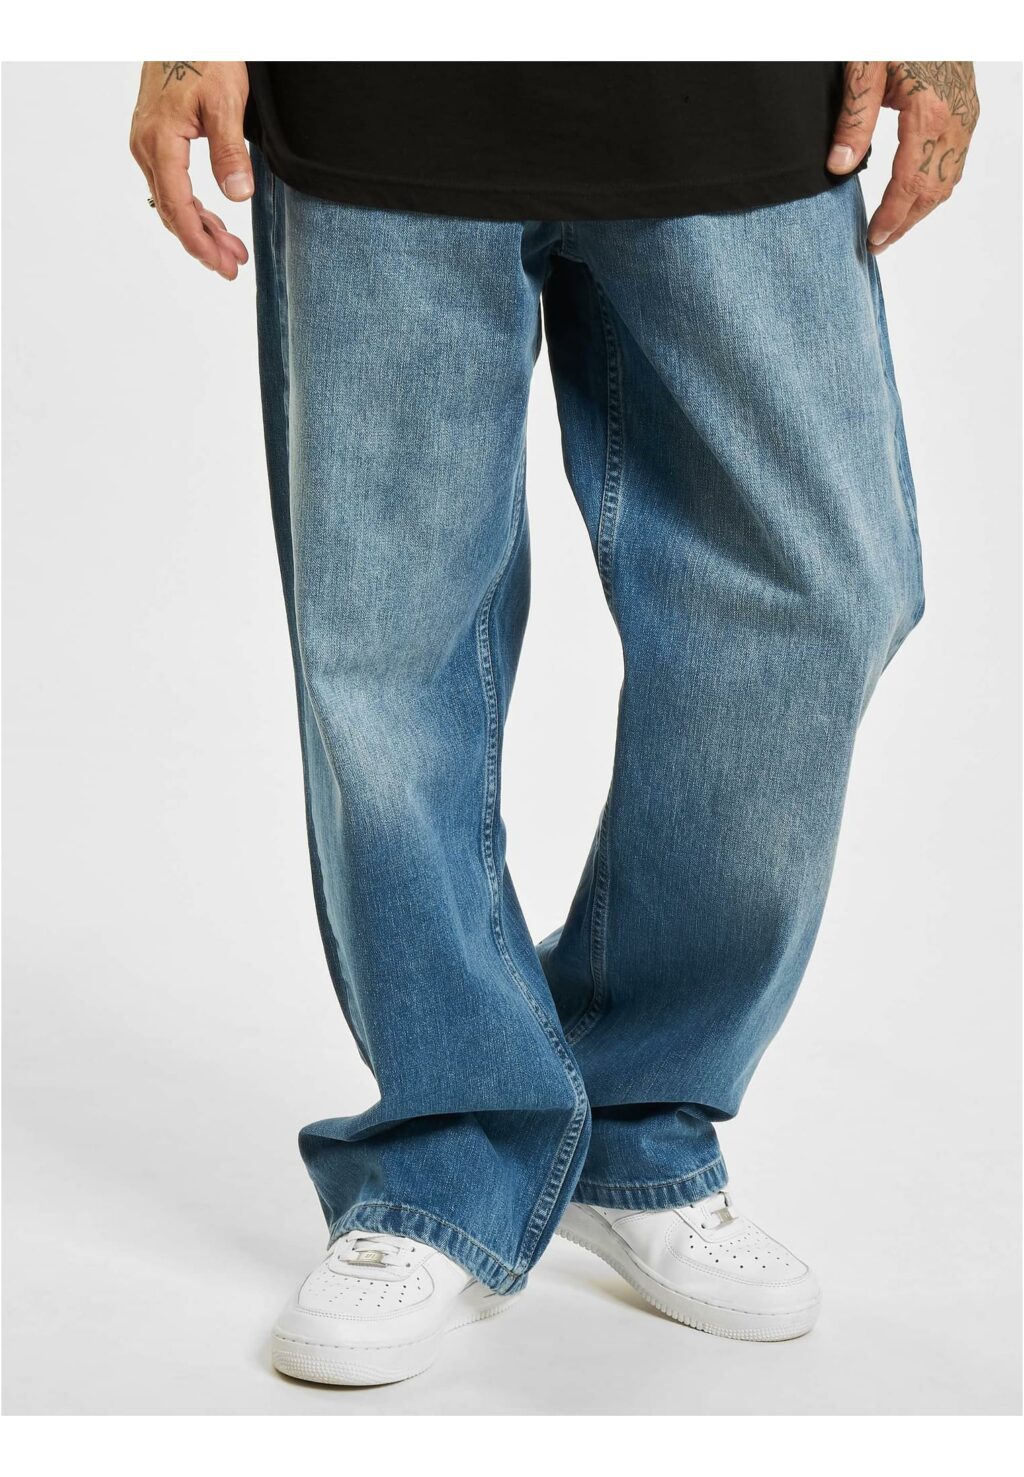 Homie Baggy Jeans denimblue DGJS158